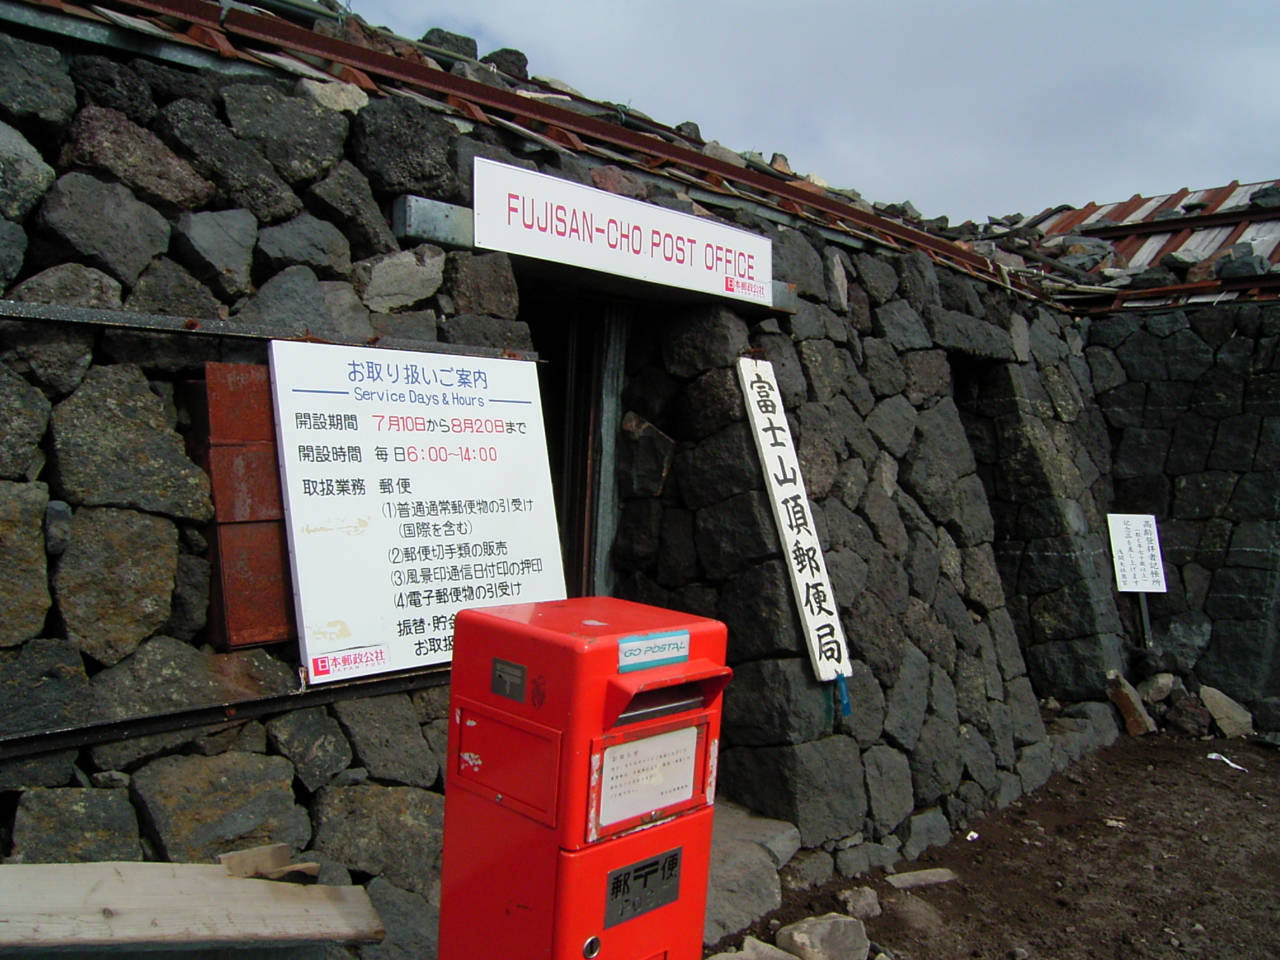 Die höchste Postfiliale Japans  (Foto von 2005, siehe aktuelle Fotos auf den Tweets unten).